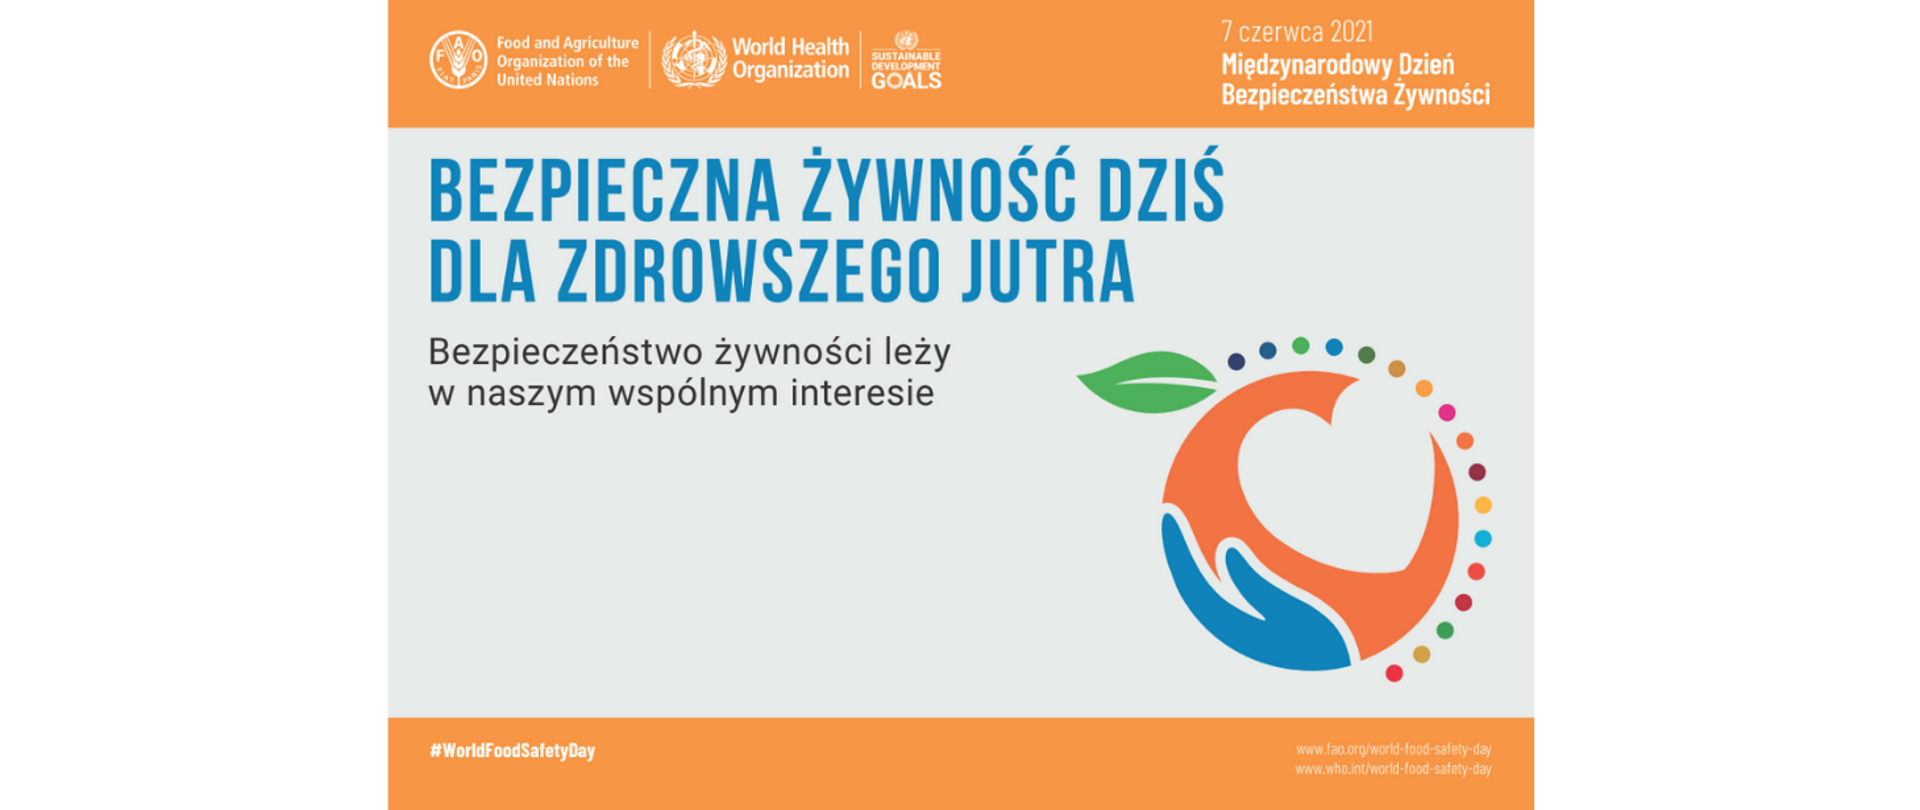 Grafika przedstawia napis „Bezpieczna żywność teraz dla zdrowego jutra” 7 czerwca 2021 Międzynarodowy dzień bezpieczeństwa żywności. W prawym dolnym rogu widnieje logo w kształcie jabłka, w które wpisane jest serce położone na dłoni.